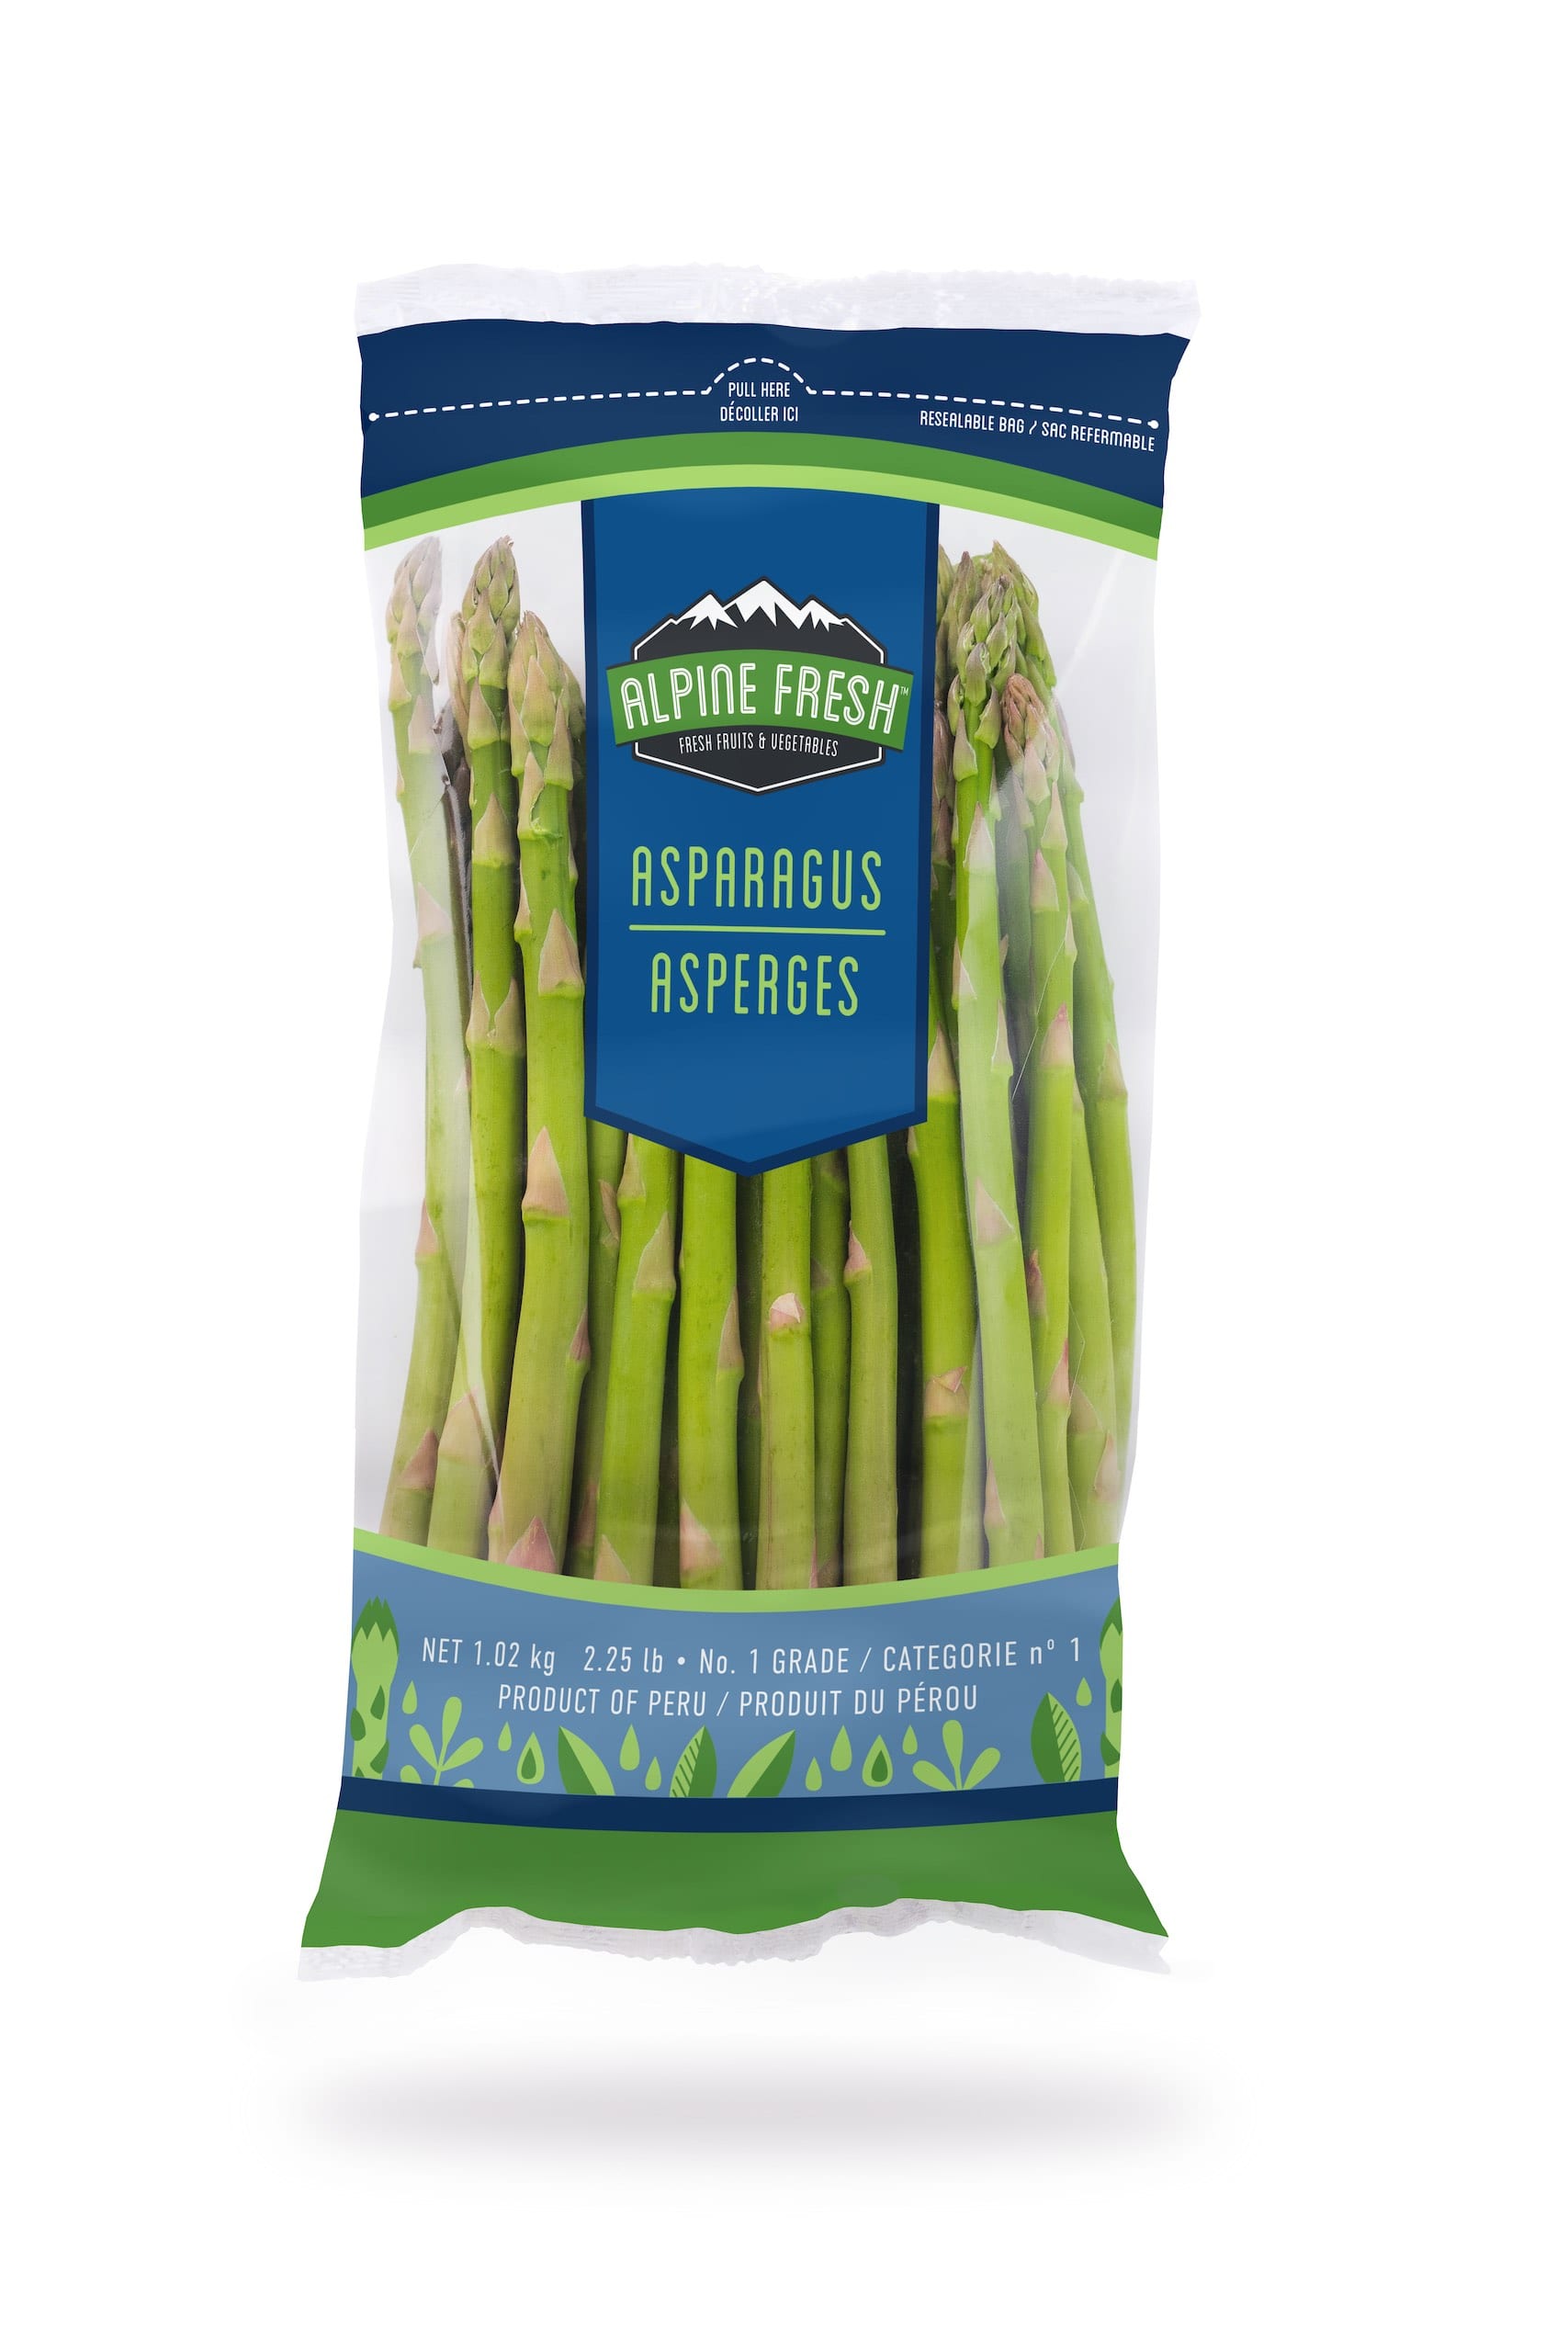 Bag of Alpine Fresh bag of asparagus from Peru